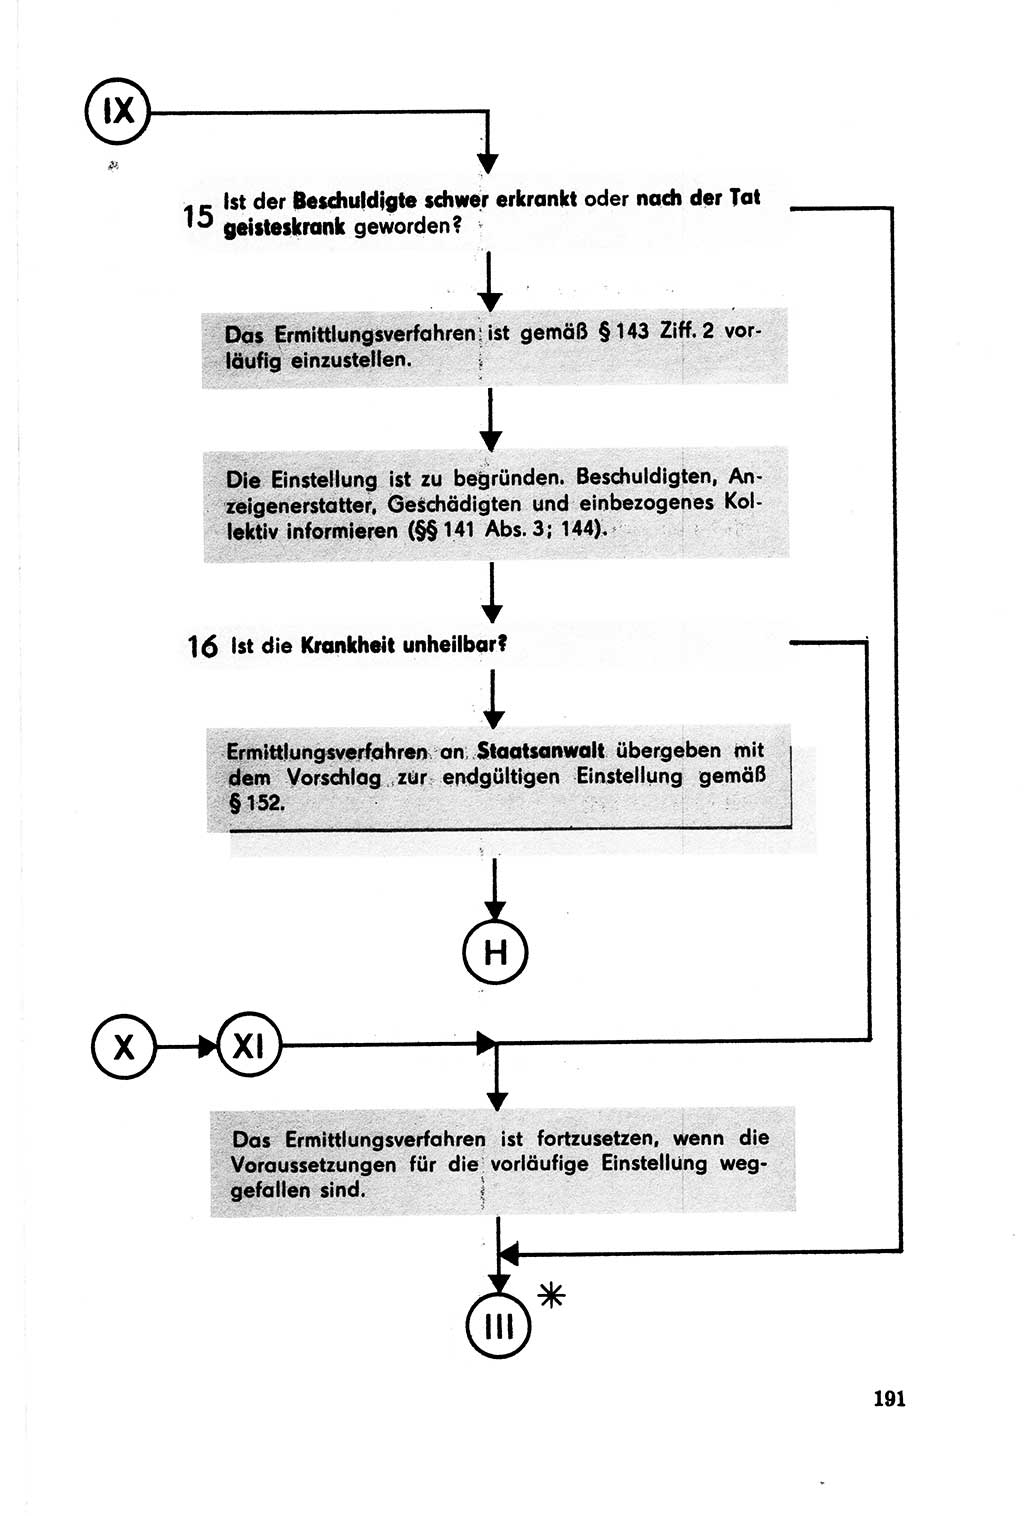 Der Abschluß des Ermittlungsverfahrens [Deutsche Demokratische Republik (DDR)] 1978, Seite 191 (Abschl. EV DDR 1978, S. 191)